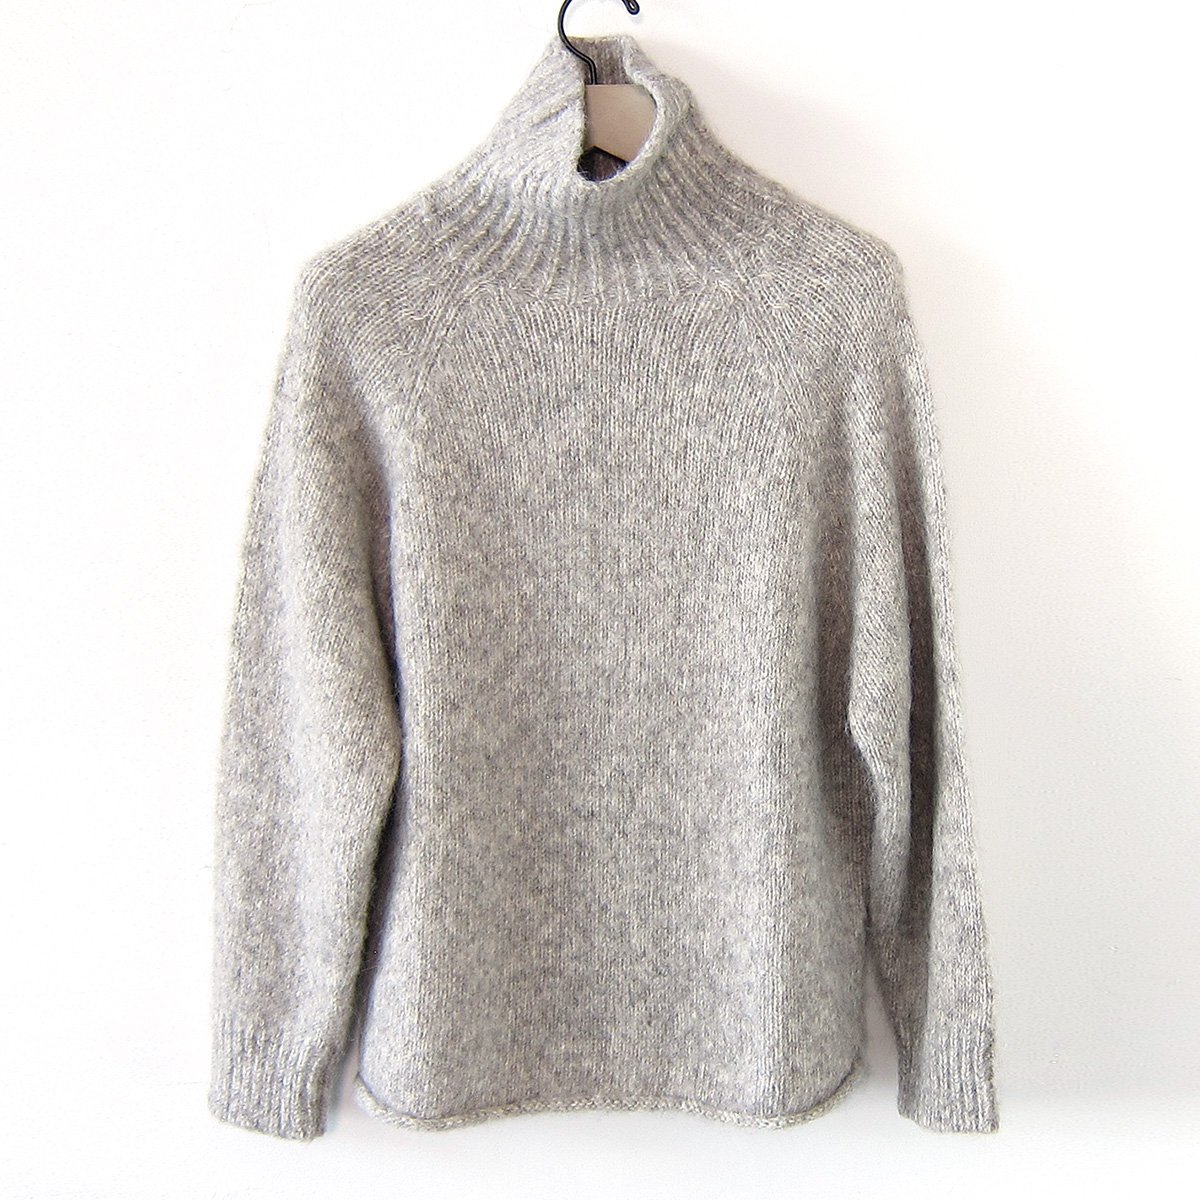 Channel Sweater in Root – Bare Knitwear